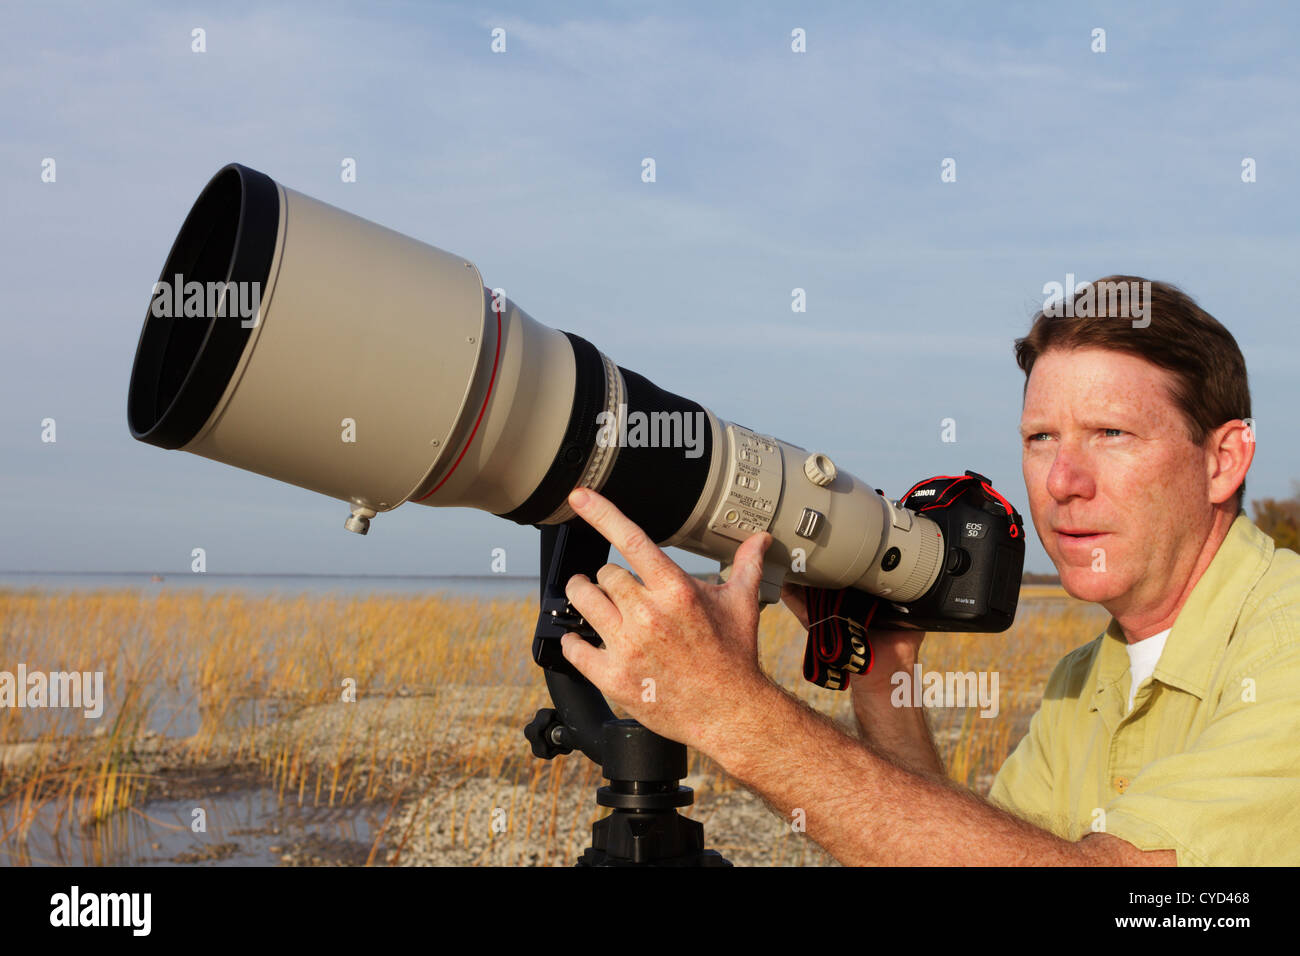 Fotógrafo profesional con un superteleobjetivo viendo para aves de fotografiar. Foto de stock